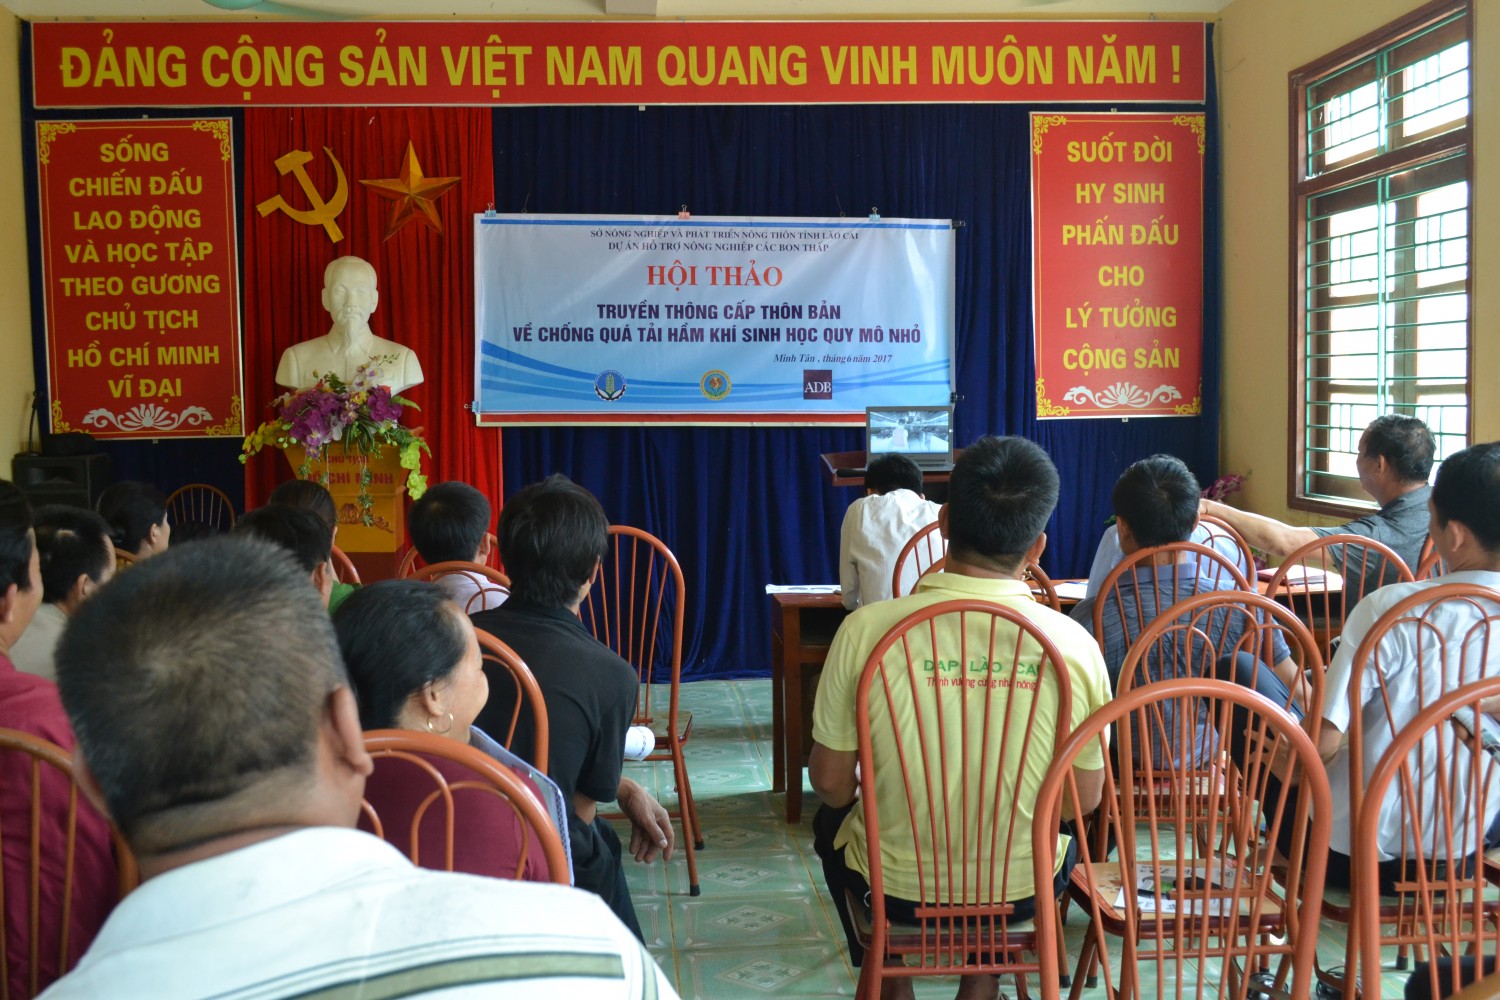 Truyền thông chống quá tải công trình khí sinh học cấp thôn bản tại huyện Bảo Yên, tỉnh Lào Cai